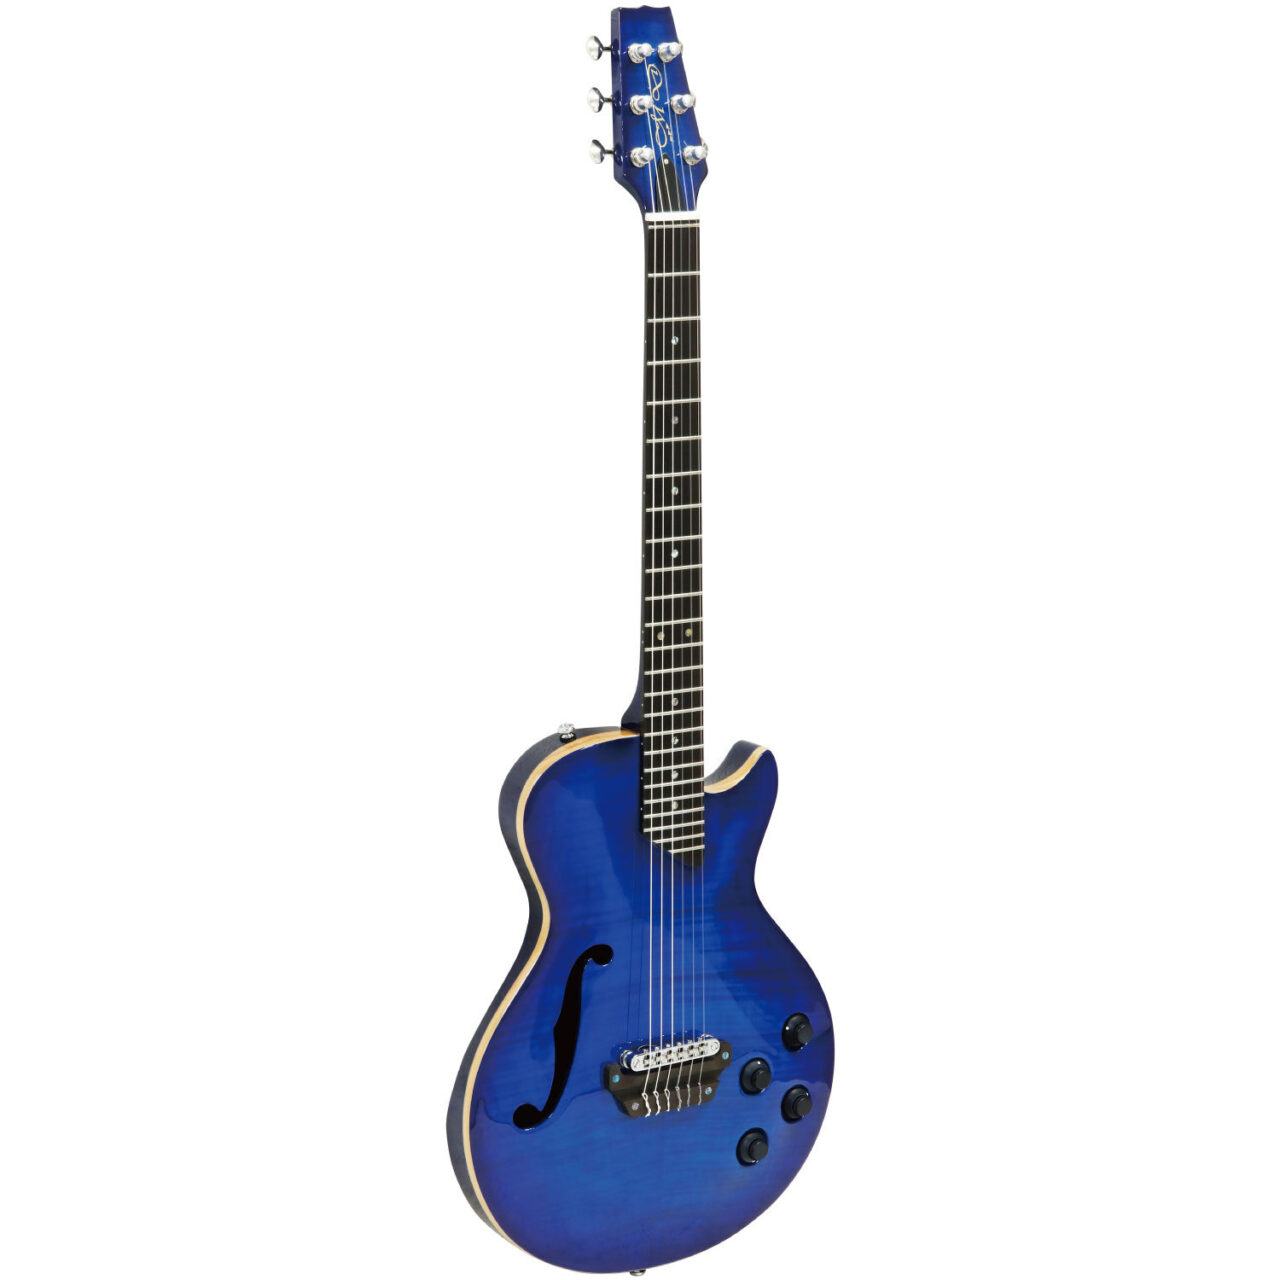 MD-MM Produce SE-01 F See-through Blue (SBL) エレクトリックアコースティックギター